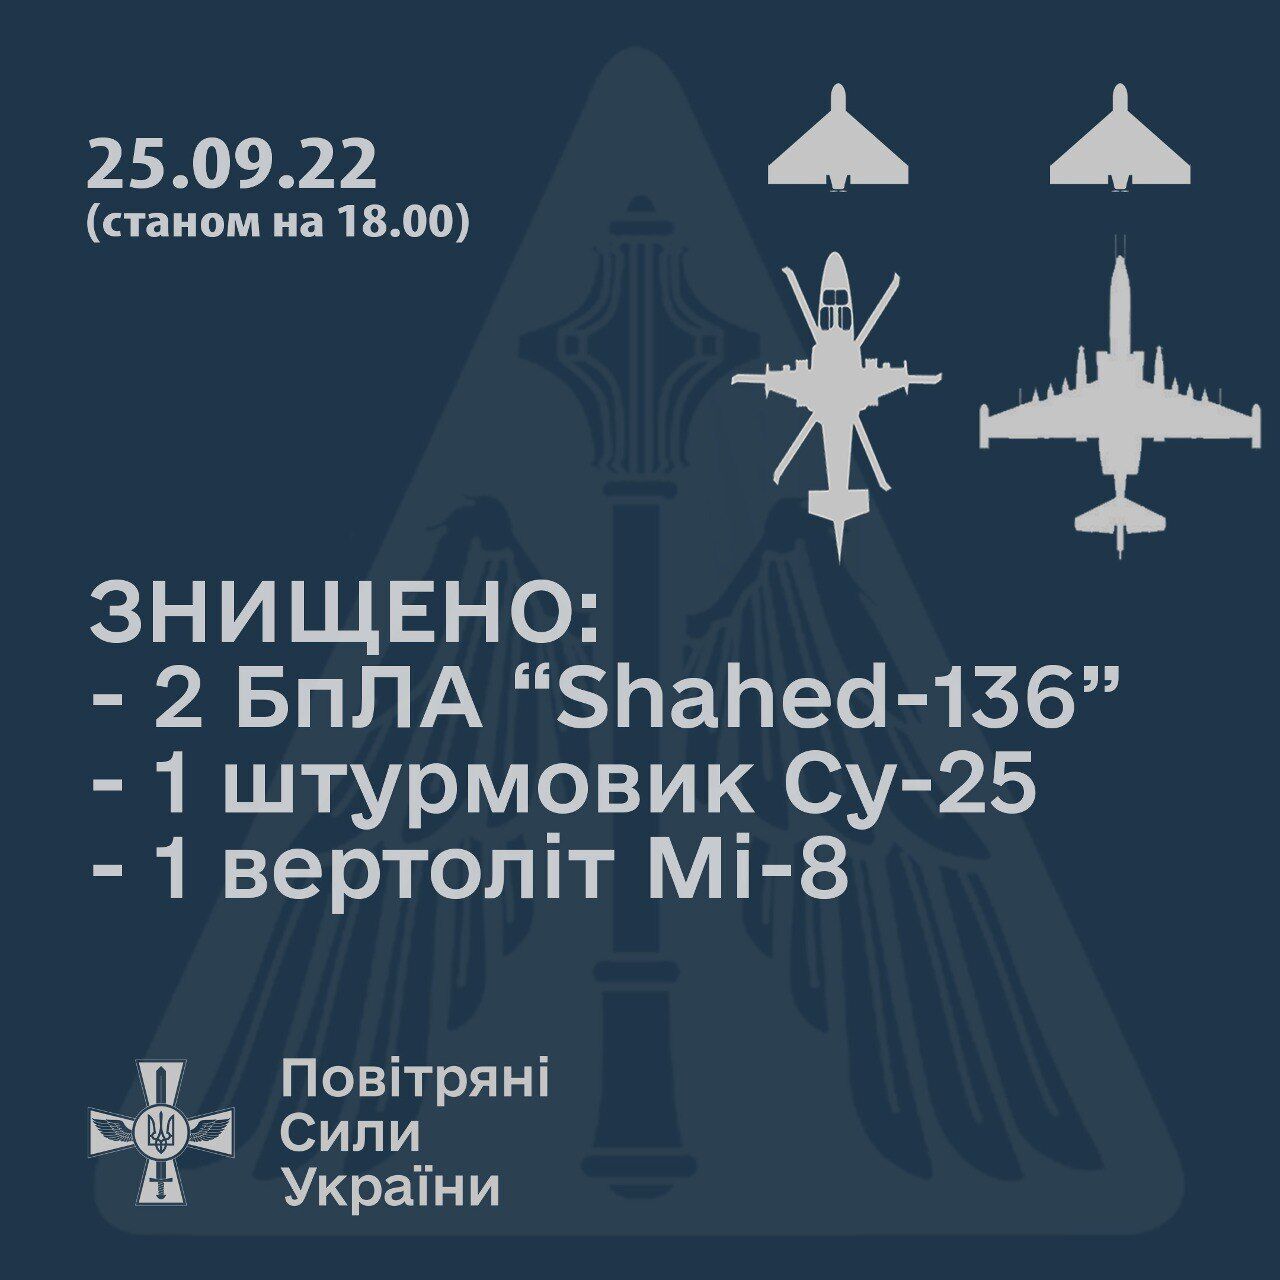 ВСУ сбили вертолет Ми-8 и штурмовик Су-25 оккупантов